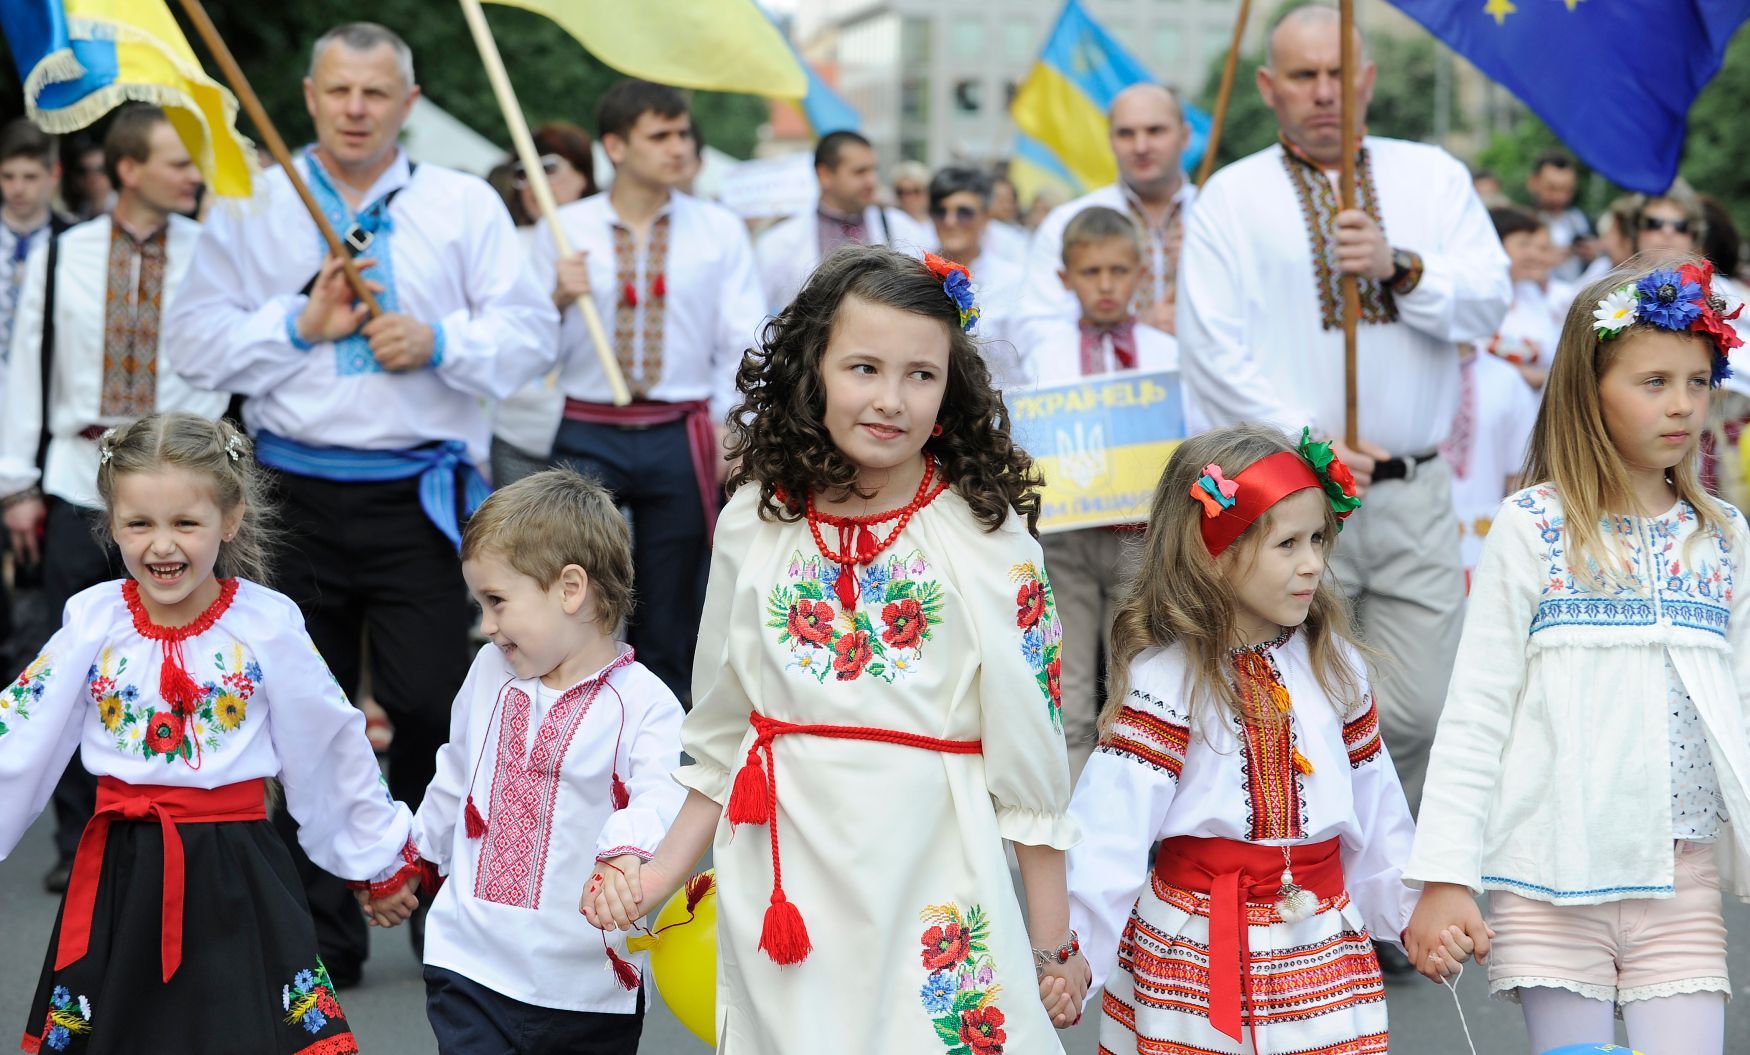 Průvod Ukrajinců Prahou v krojích